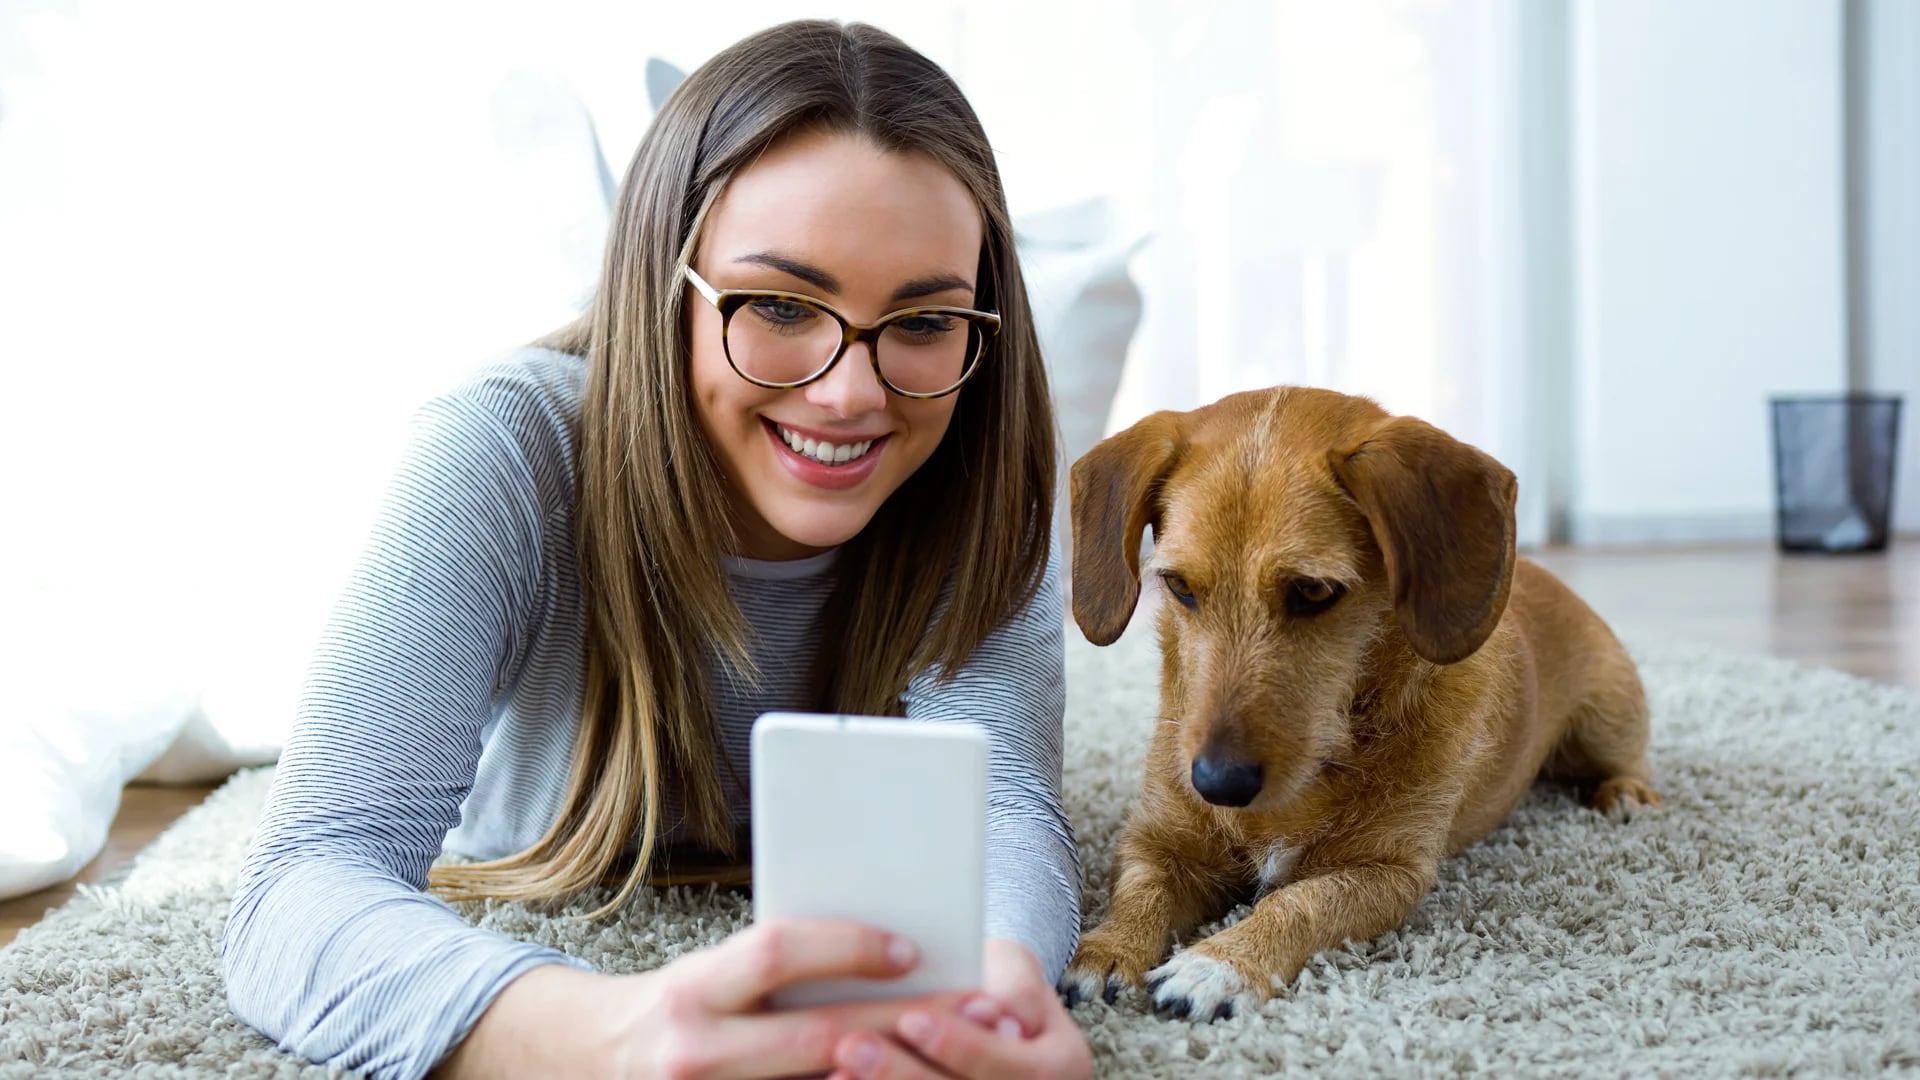 Dog Hero ofrece a los usuarios poder vincularlos con anfitriones decididos a hospedar a las mascotas por una cifra diaria, una vez planeadas las vacaciones familiares (iStock)